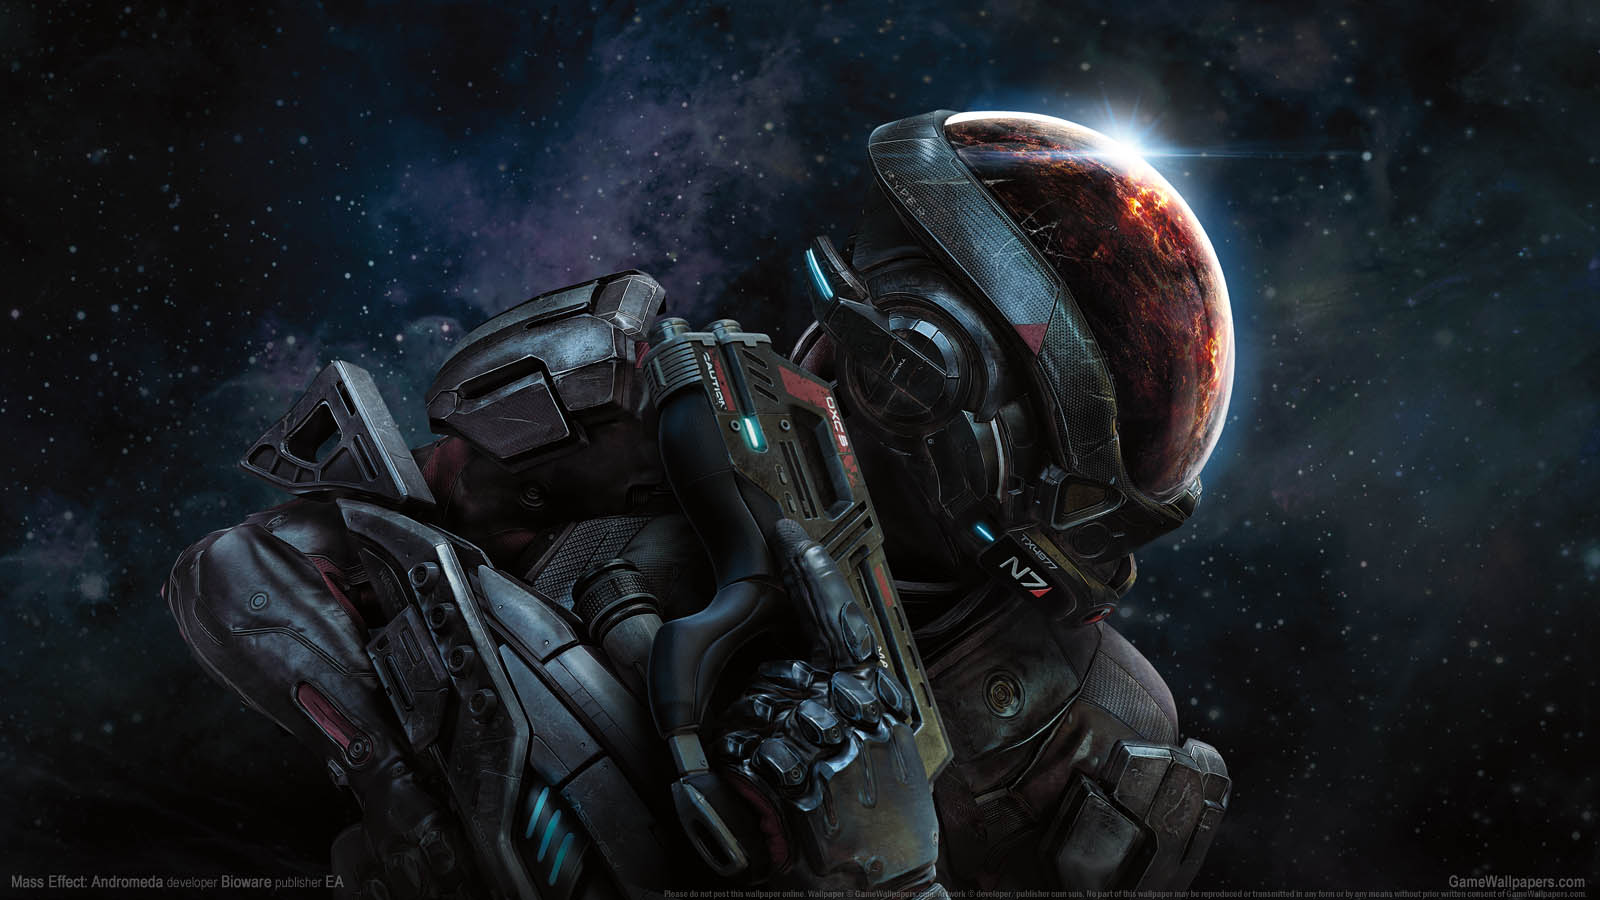 Mass Effect: Andromeda fond d'cran 01 1600x900